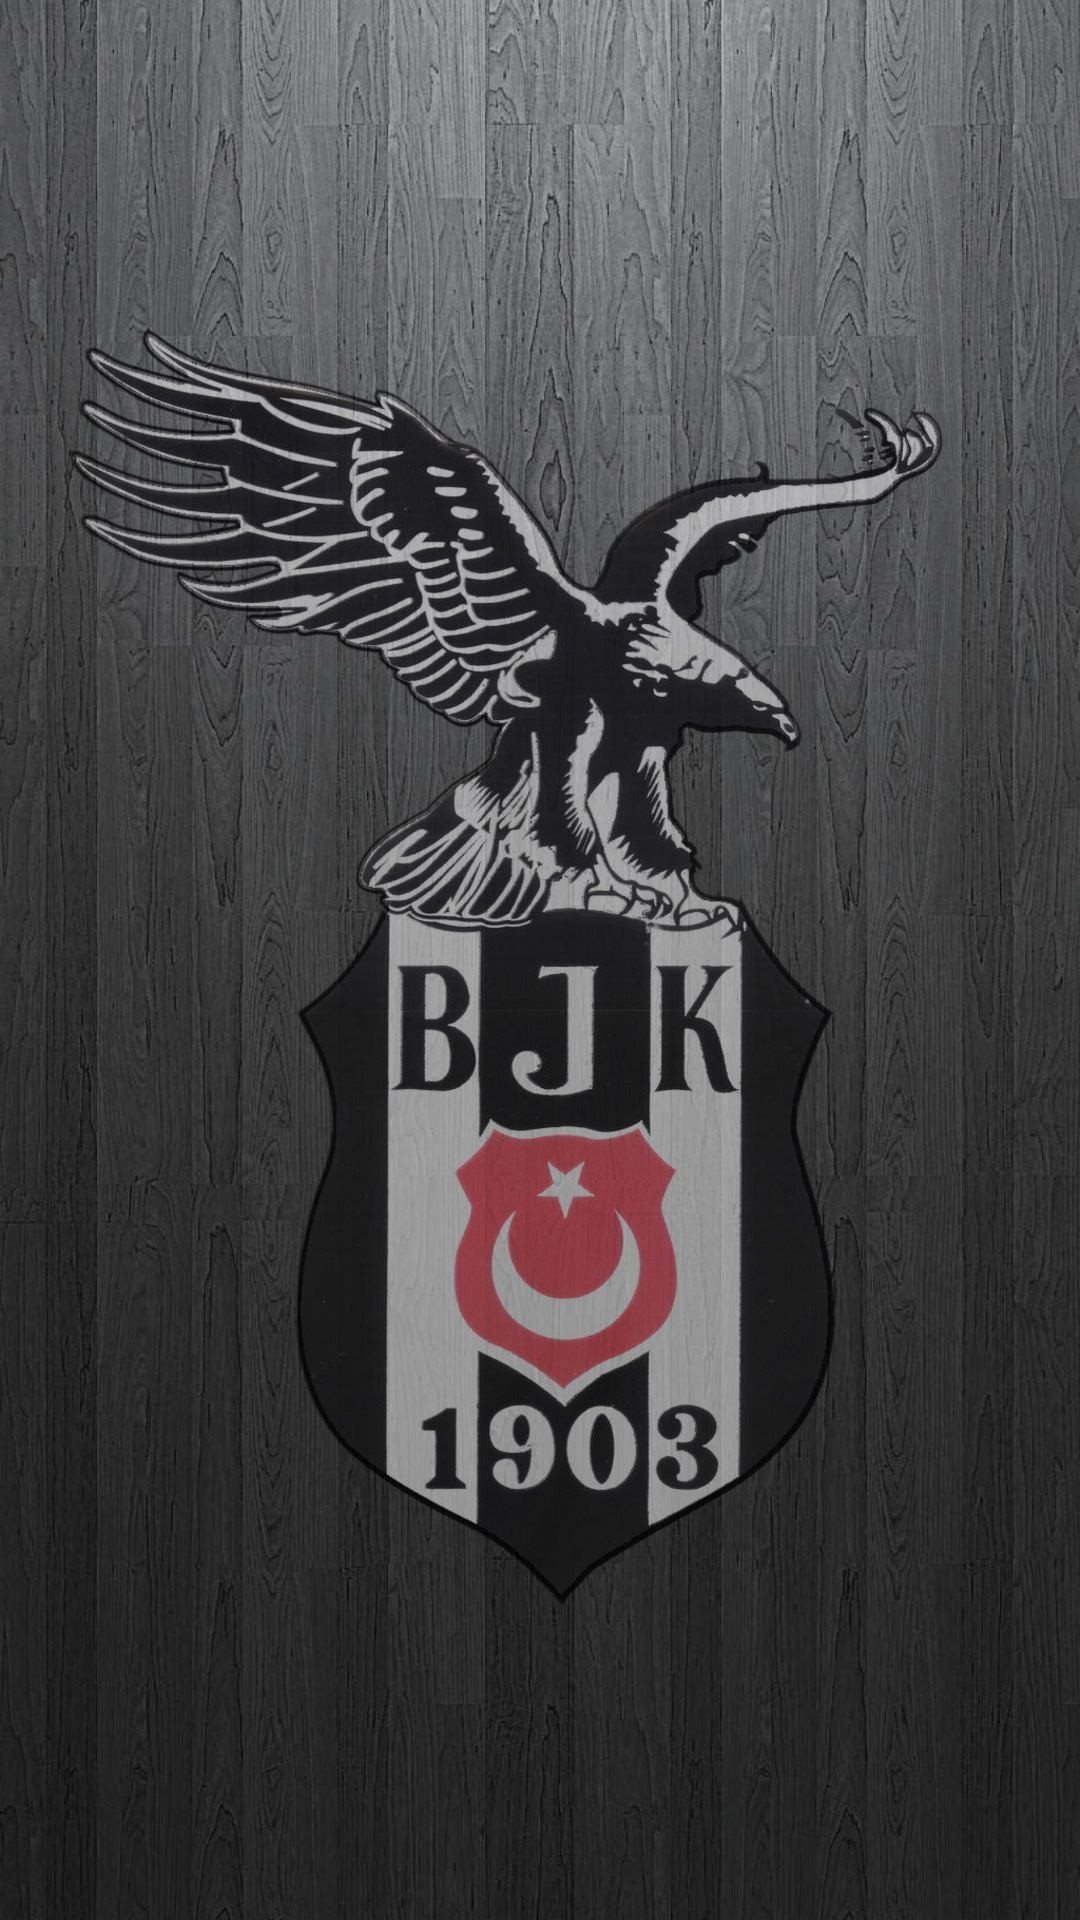 bjk wallpaper,camiseta,emblema,gráficos,ilustración,pájaro